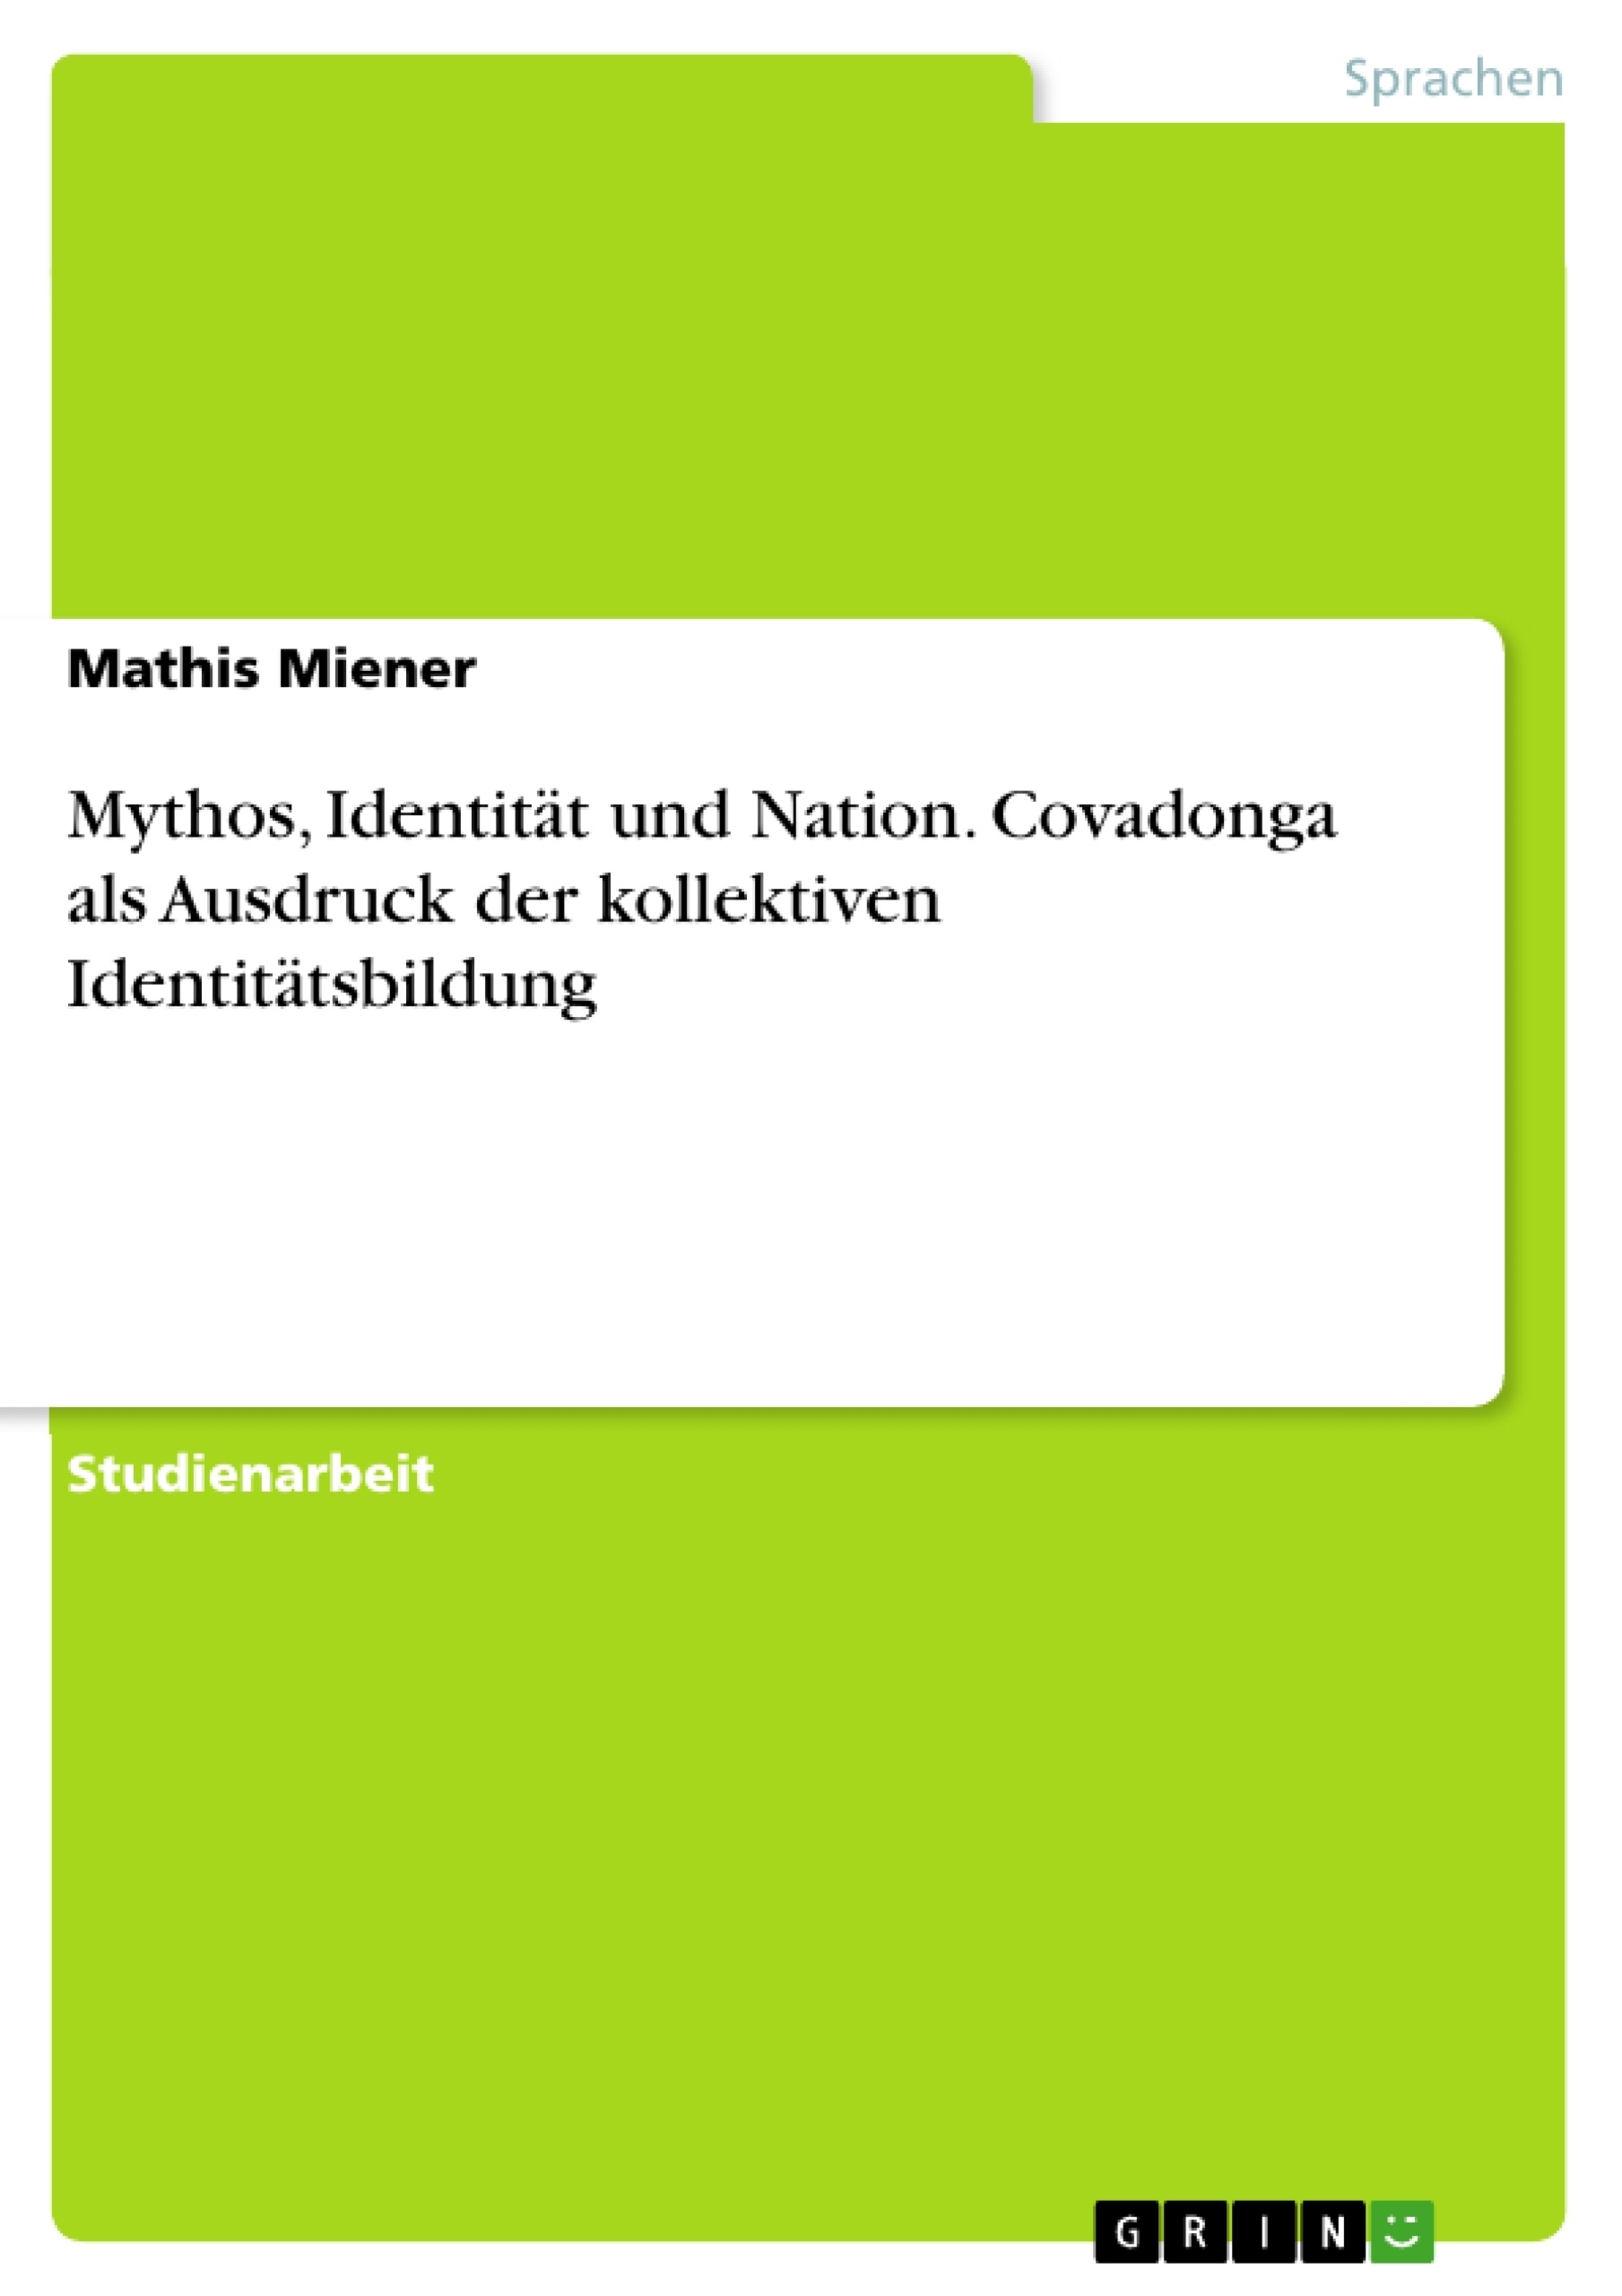 Titre: Mythos, Identität und Nation. Covadonga als Ausdruck der kollektiven Identitätsbildung